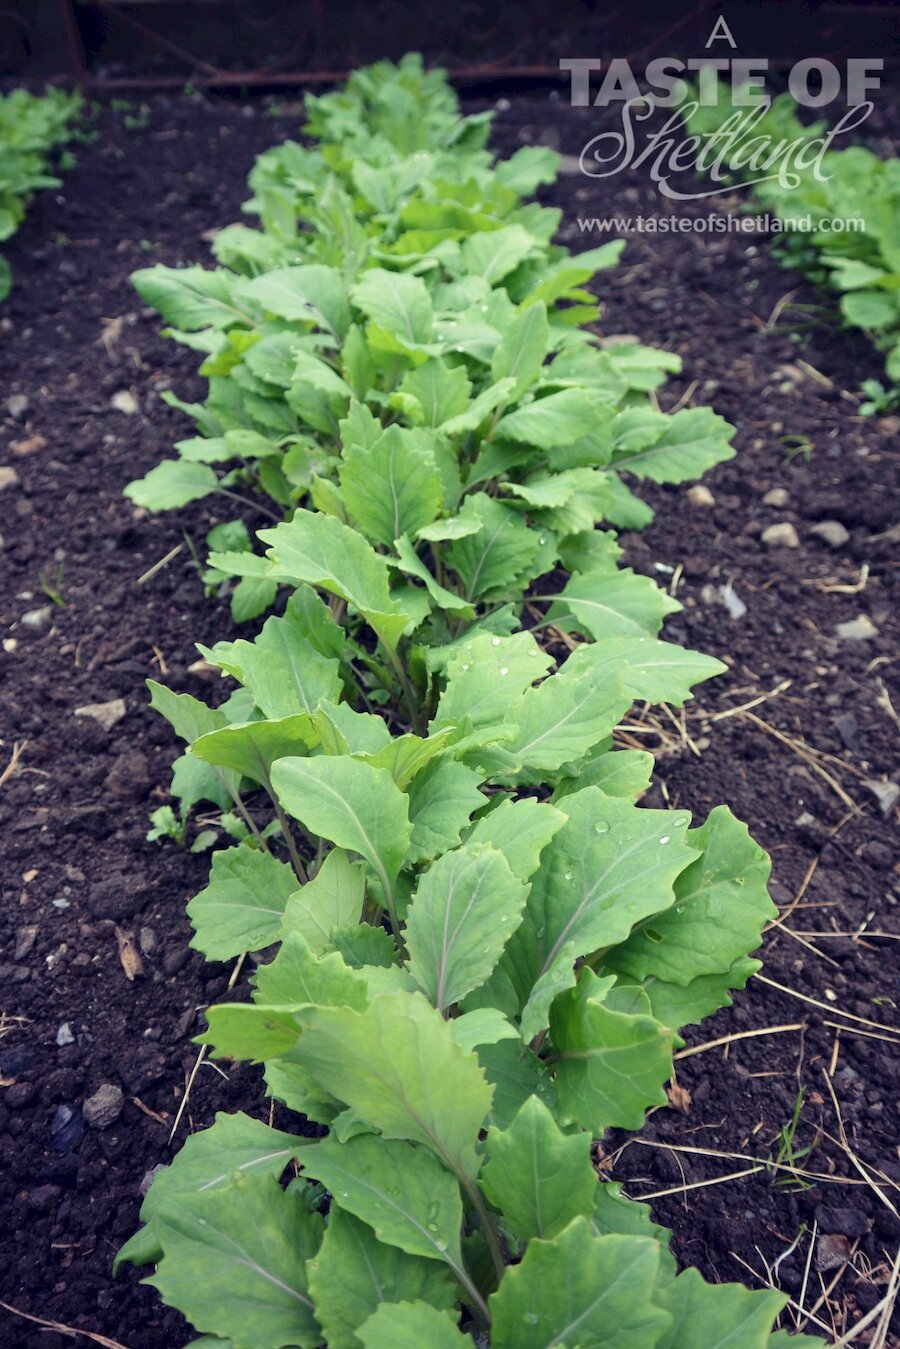 Good looking Shetland cabbage seedlings